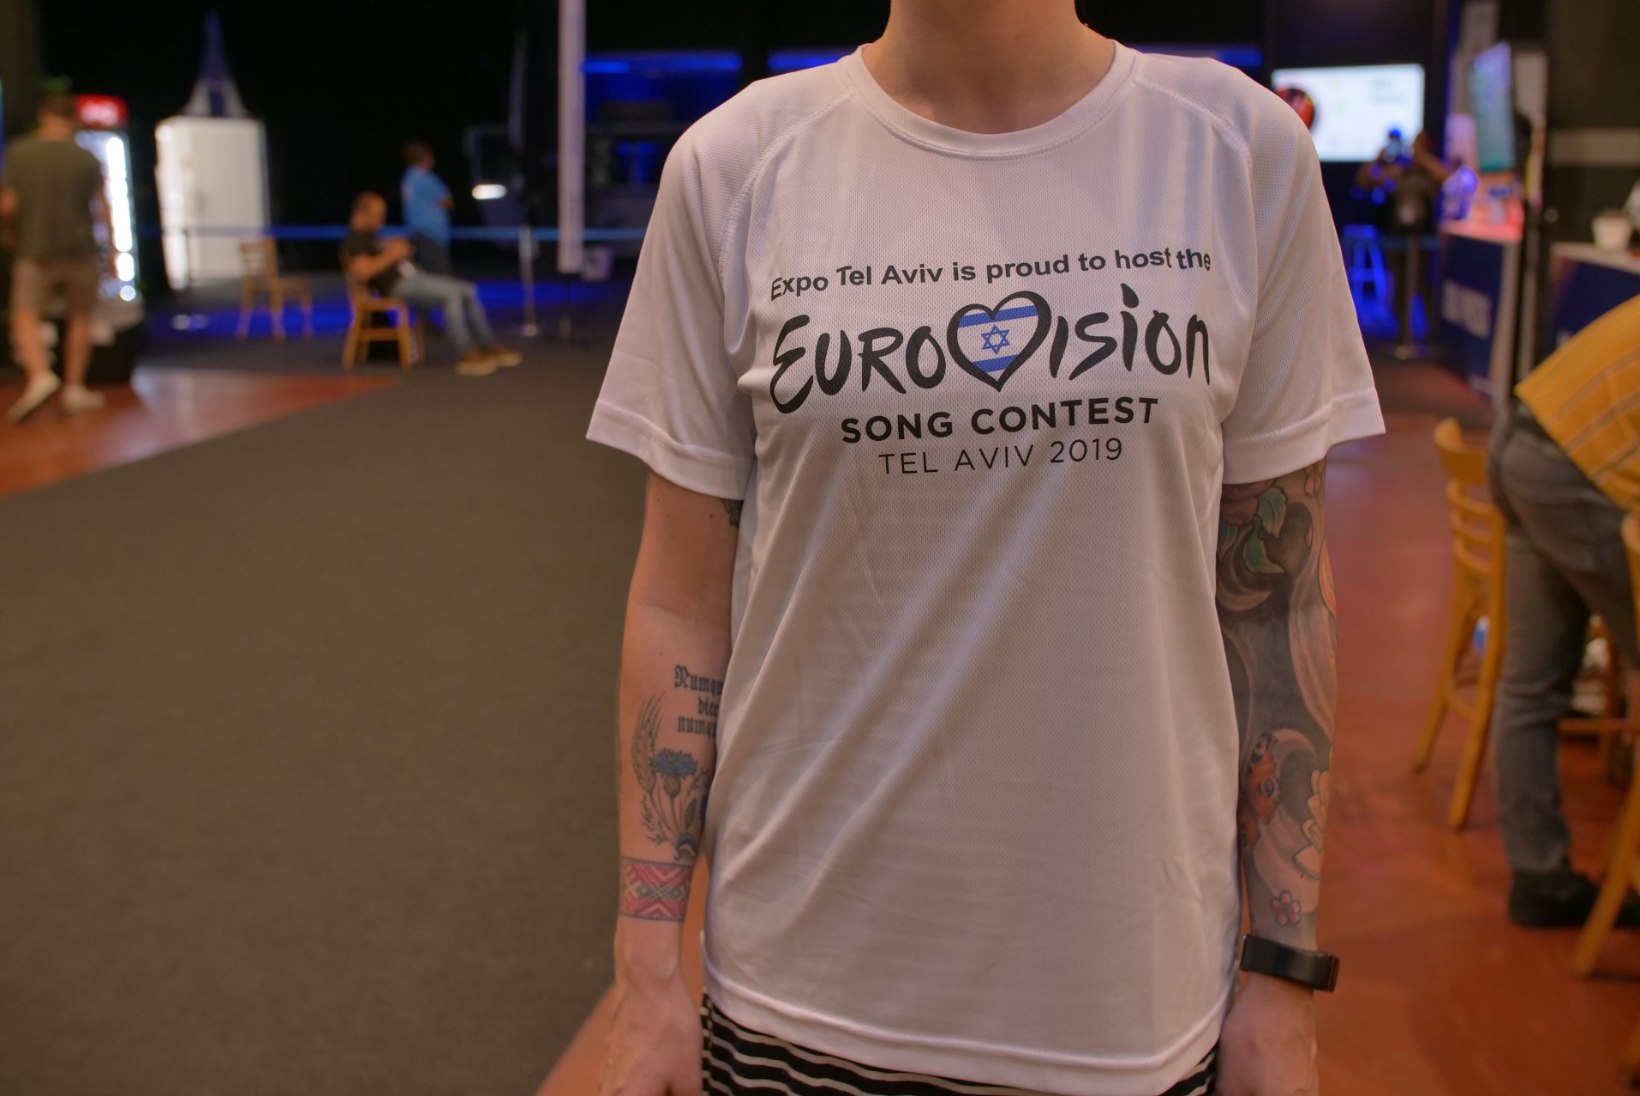 FOTOD | Eurovisioni ajakirjanikele jagatav nänn on tänavu kõvasti kokku kuivanud